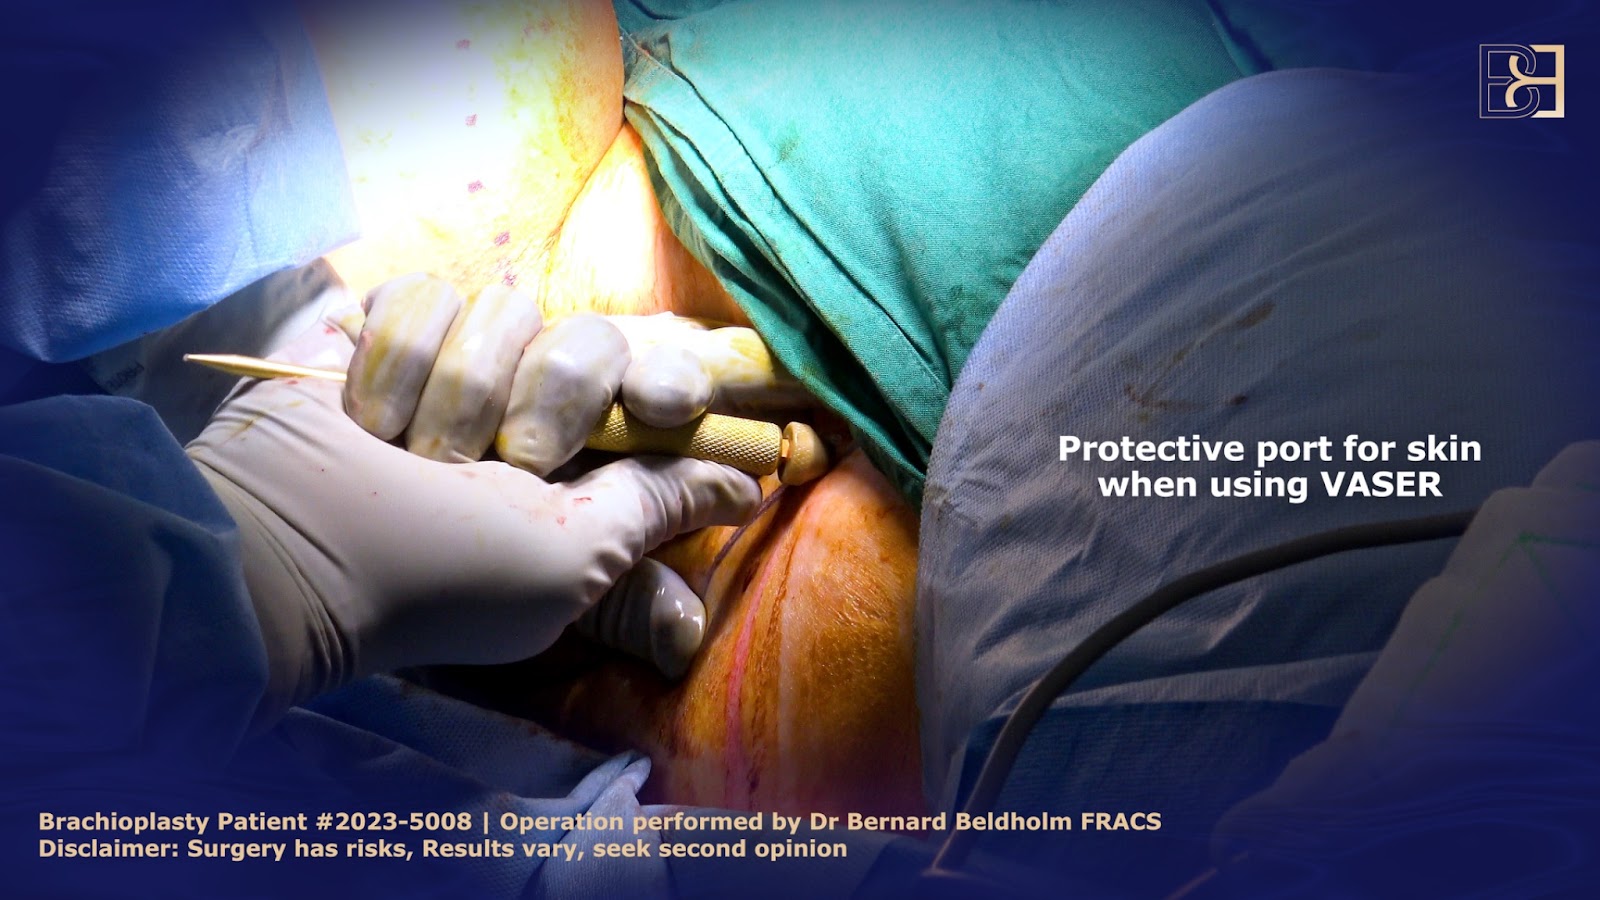 Protective port inserted prior to VASER liposuction | Dr Bernard Beldholm